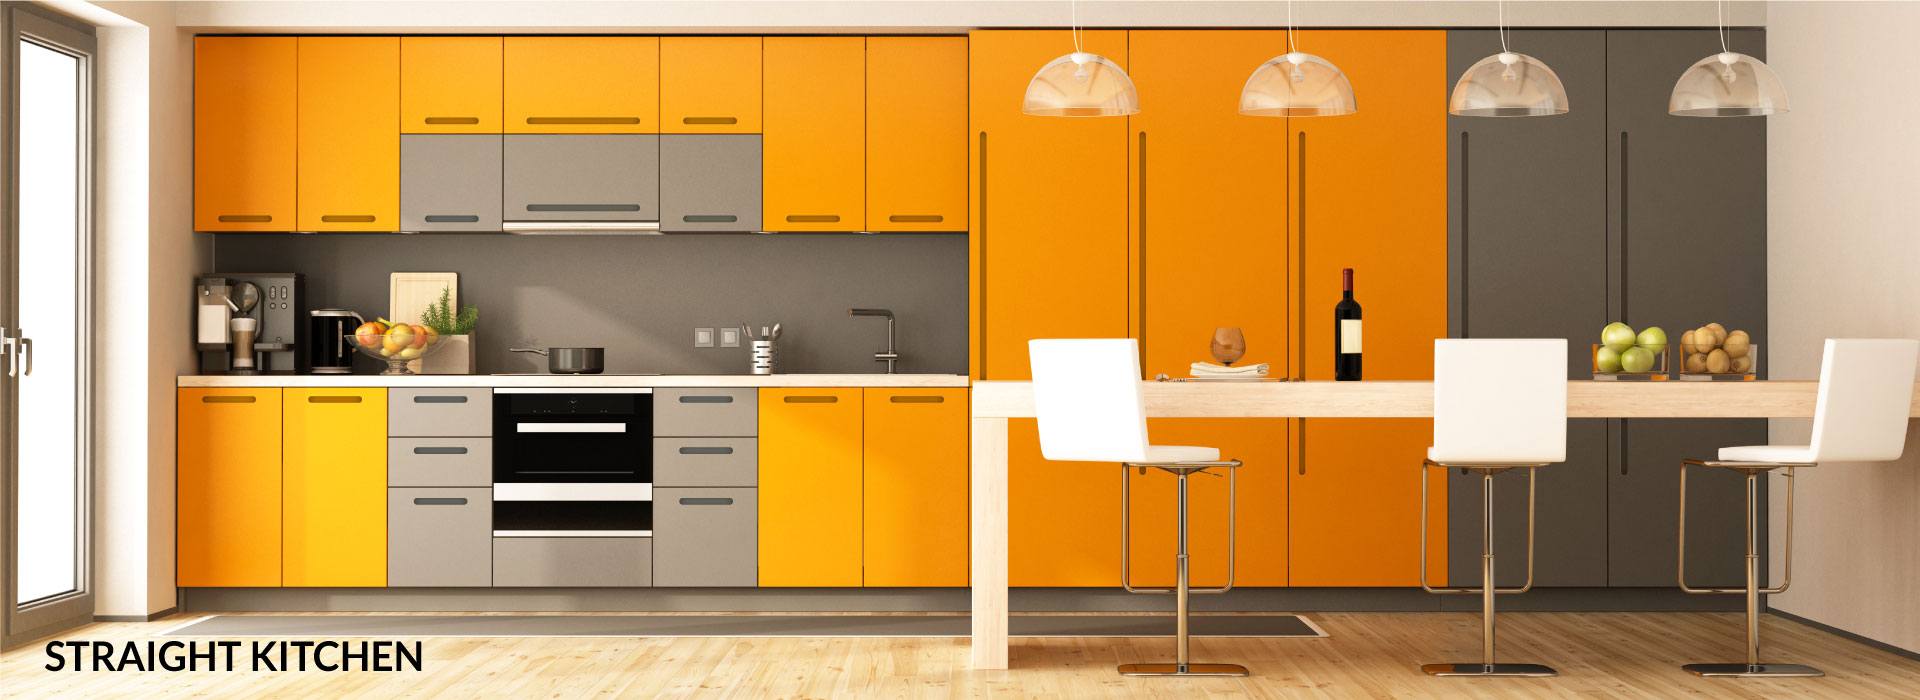 Modern Design Straight Kitchen | Promkraft Interior